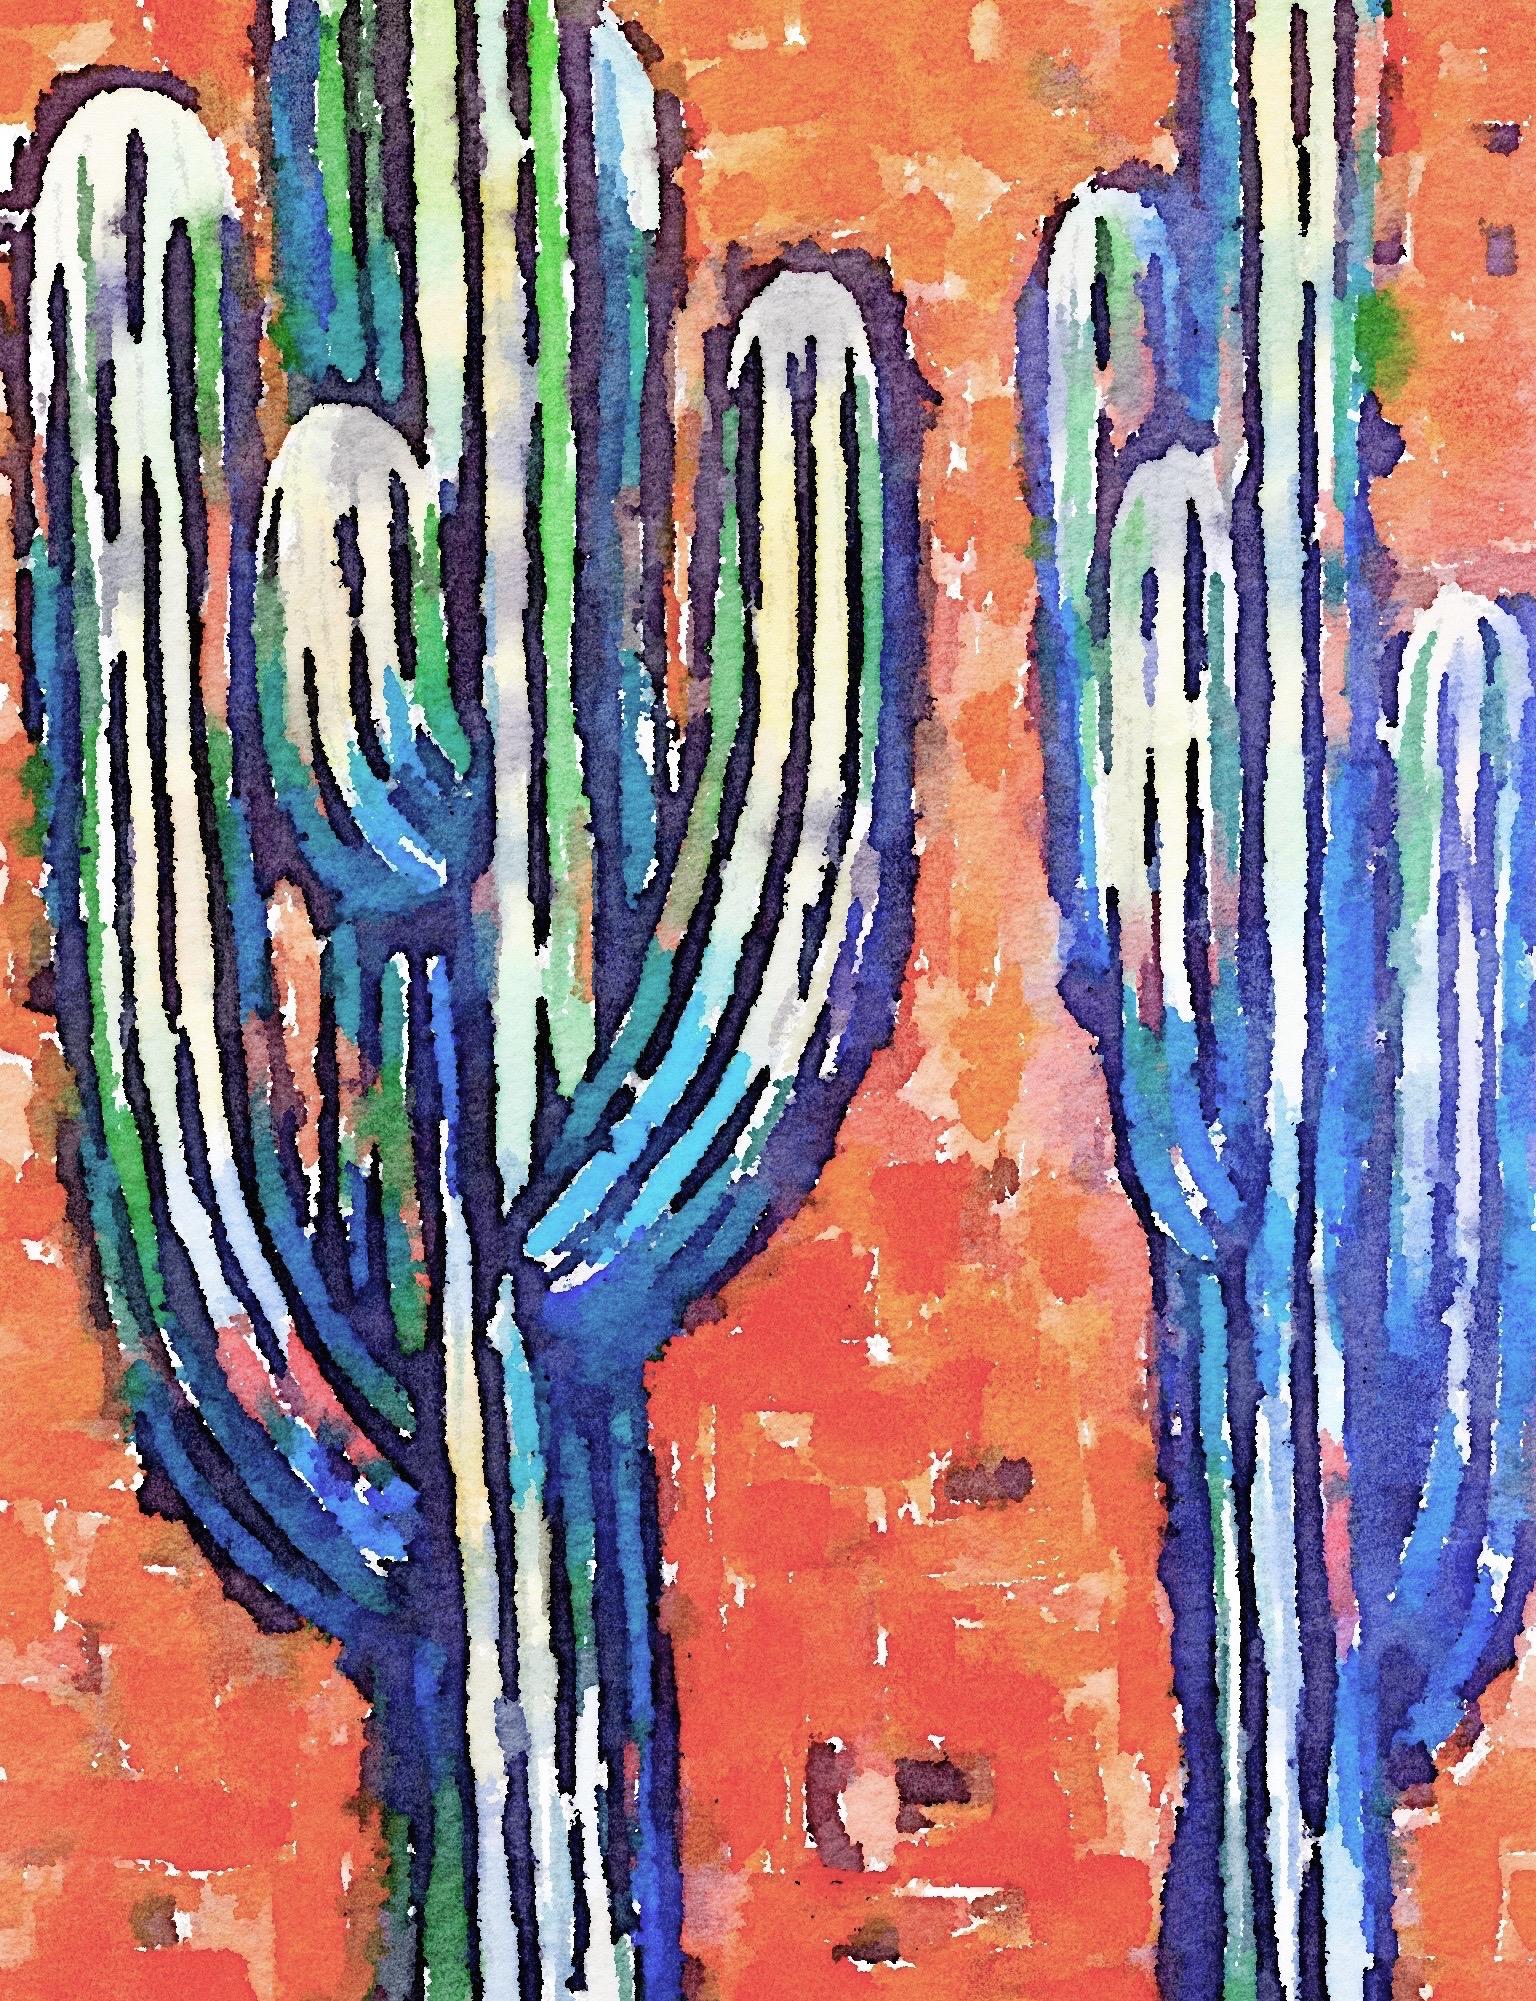 Rustic Saguaro